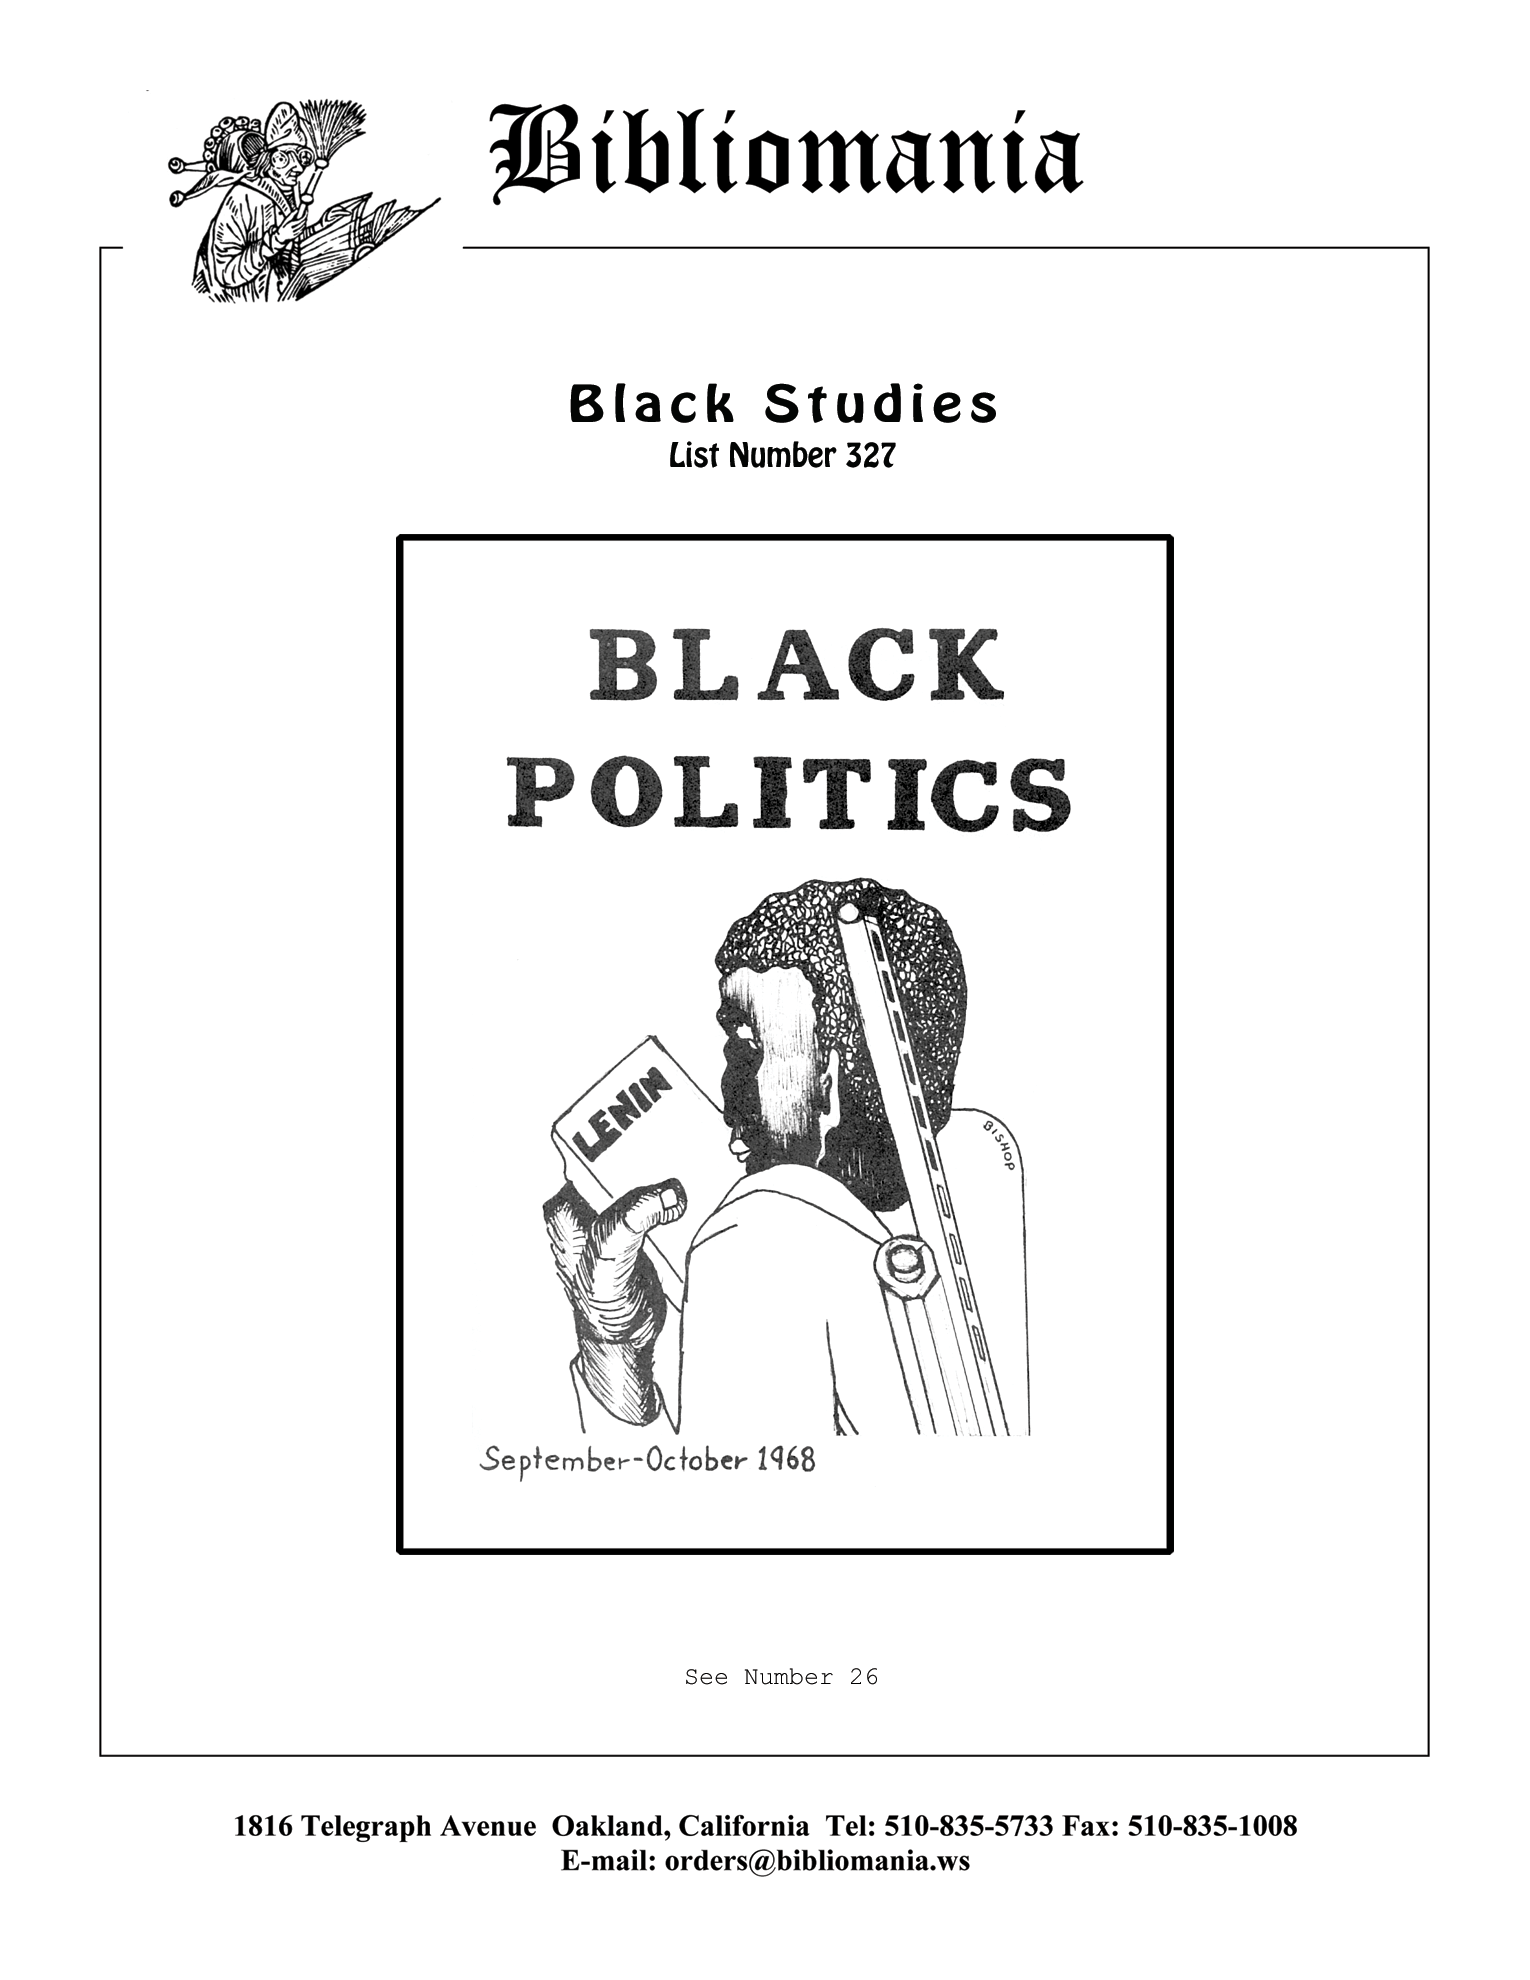 List Number 327 Black Studies